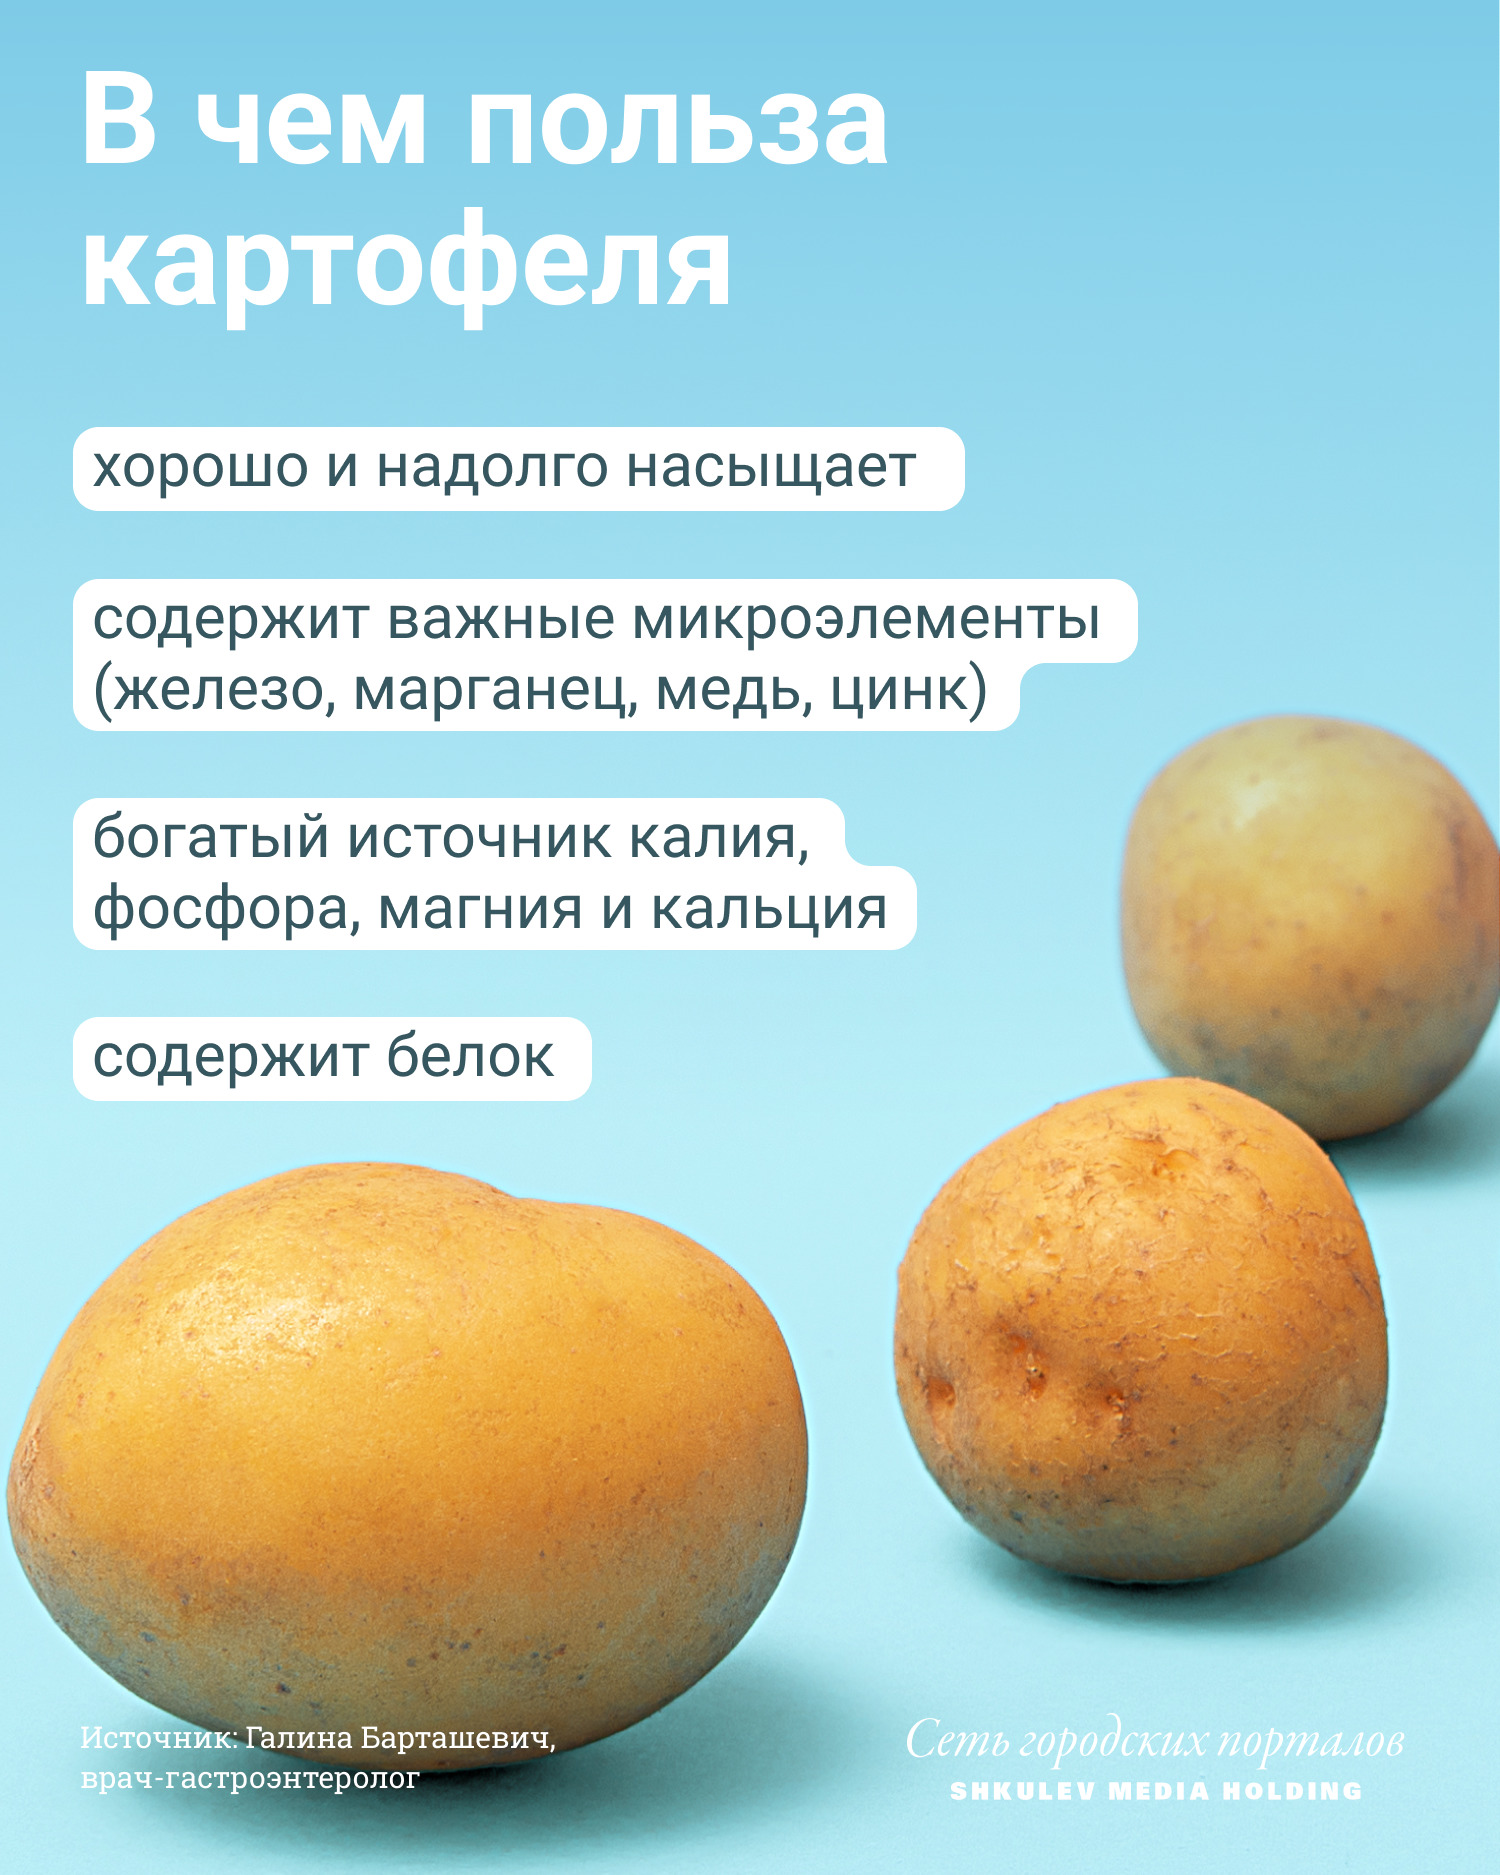 Картофель и его полезные свойства